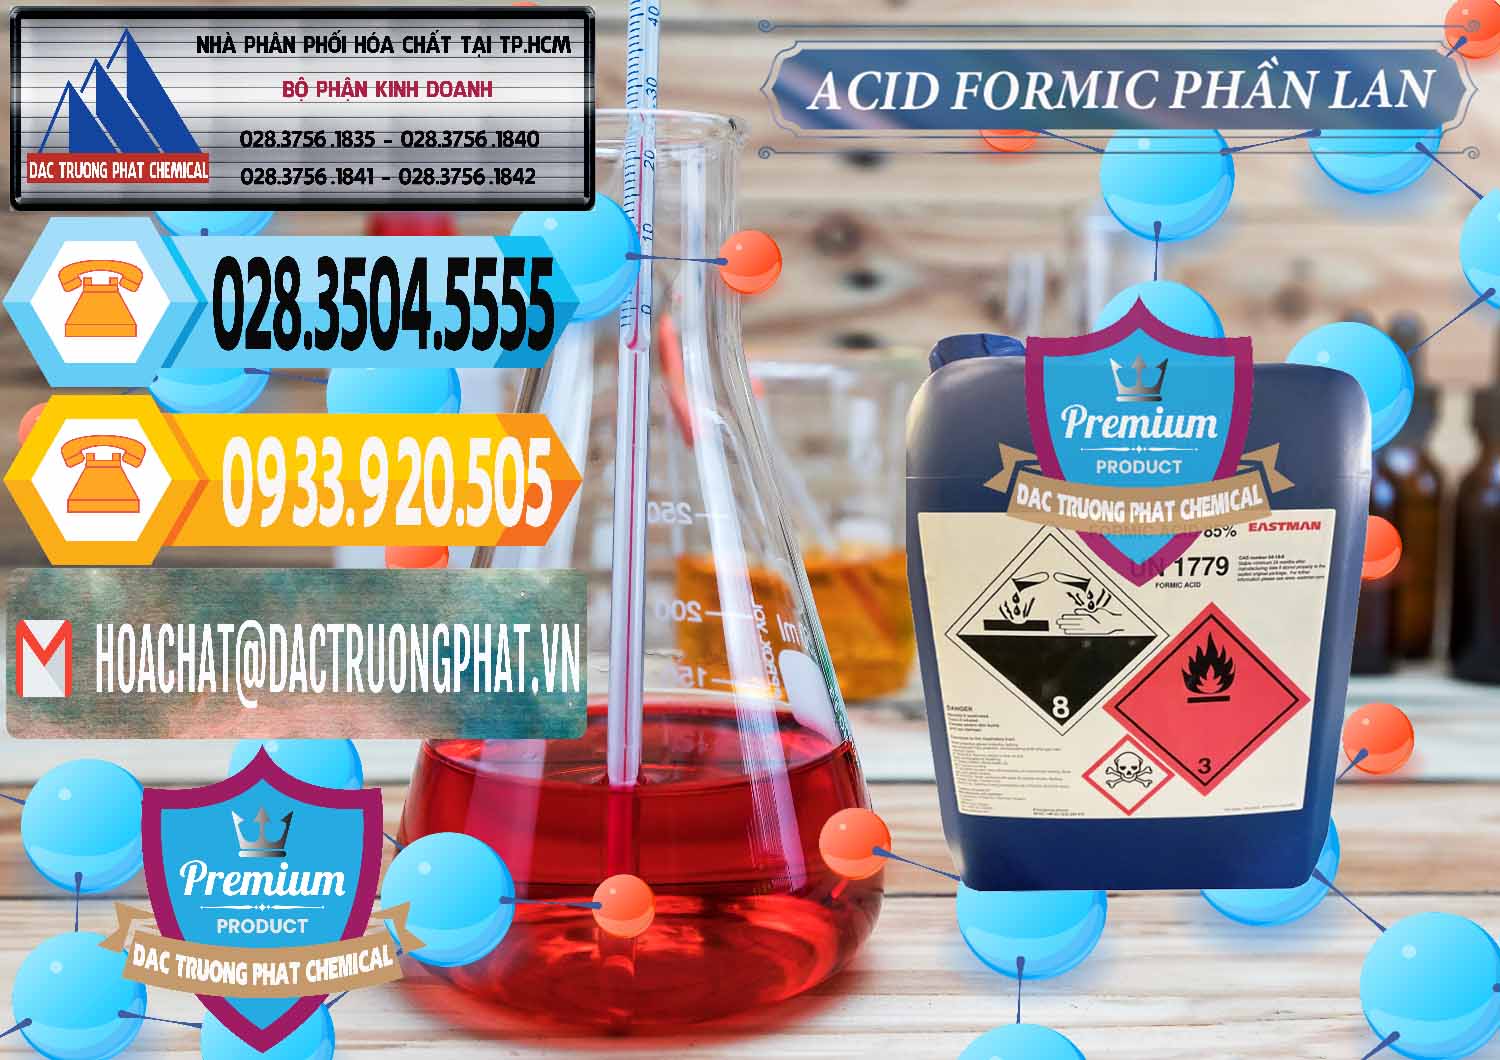 Nơi phân phối _ bán Acid Formic - Axit Formic Phần Lan Finland - 0376 - Phân phối & kinh doanh hóa chất tại TP.HCM - hoachattayrua.net